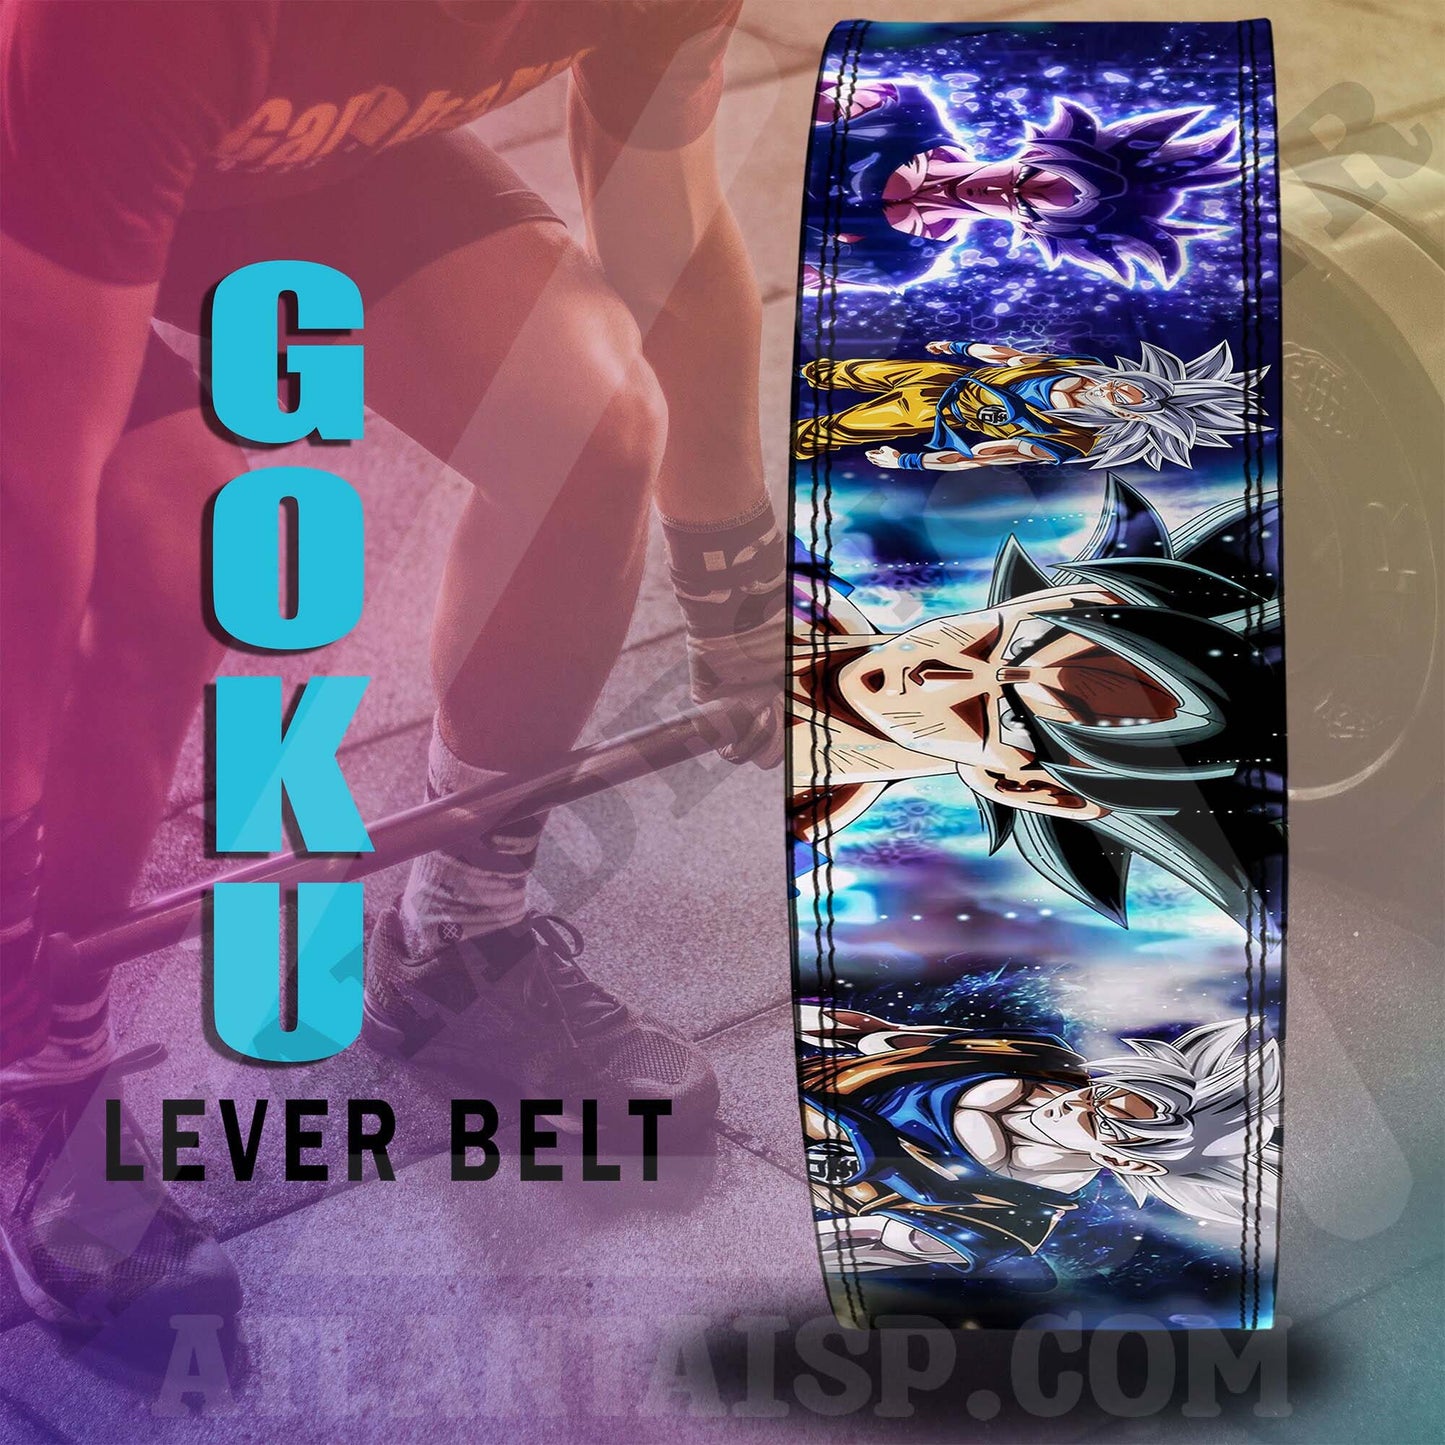 Dragon Ball Z Anime Lever Belt | Powerlifting belt | Goku Lever Lifting belt | Anime Gym Belt | Goku Weightlifting belt | Goku Lever Belt